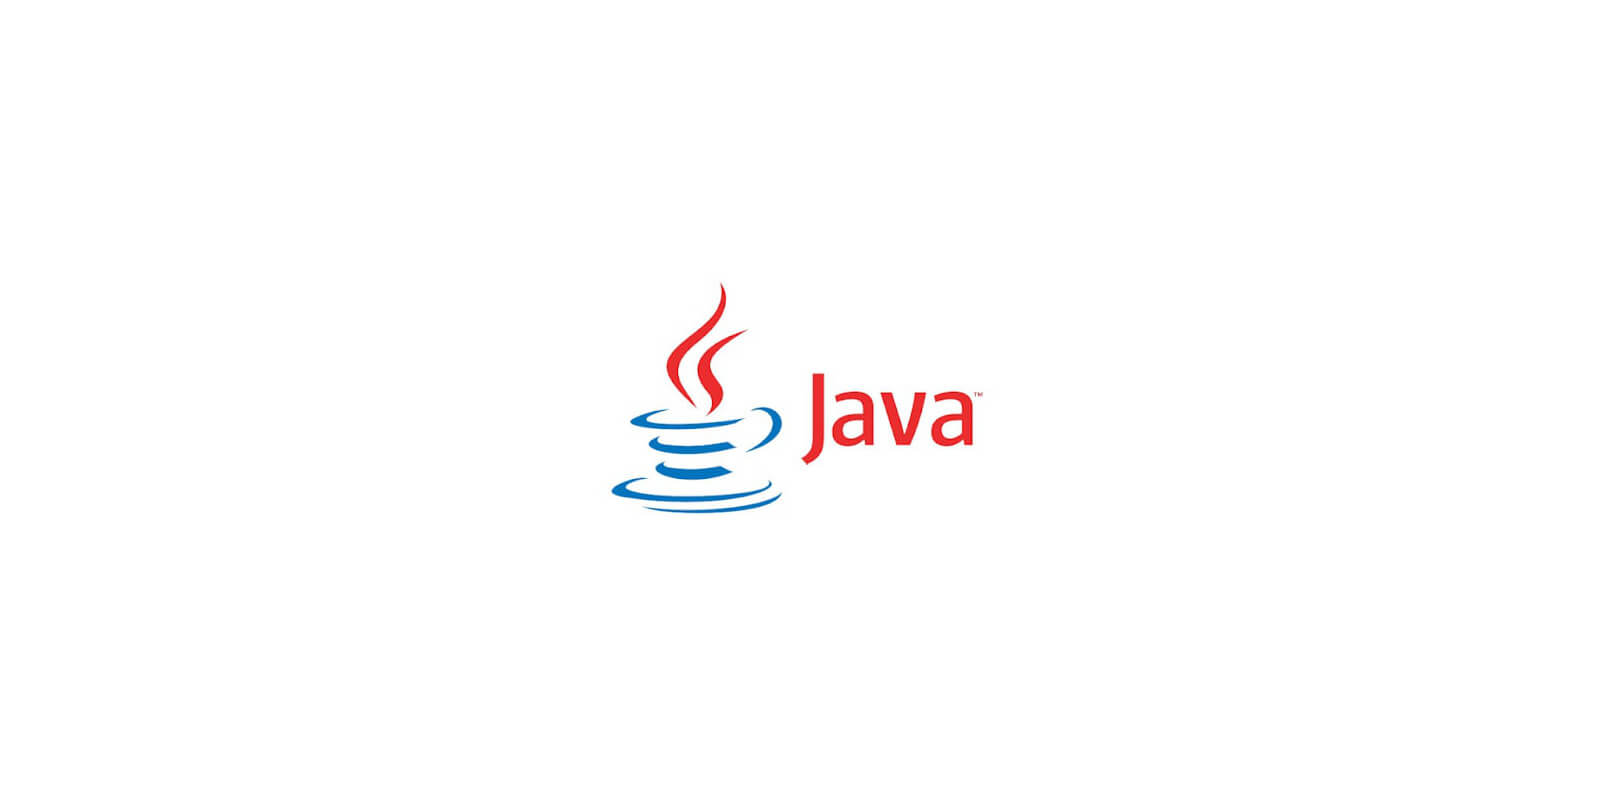 Install Java JDK on Linux Ubuntu